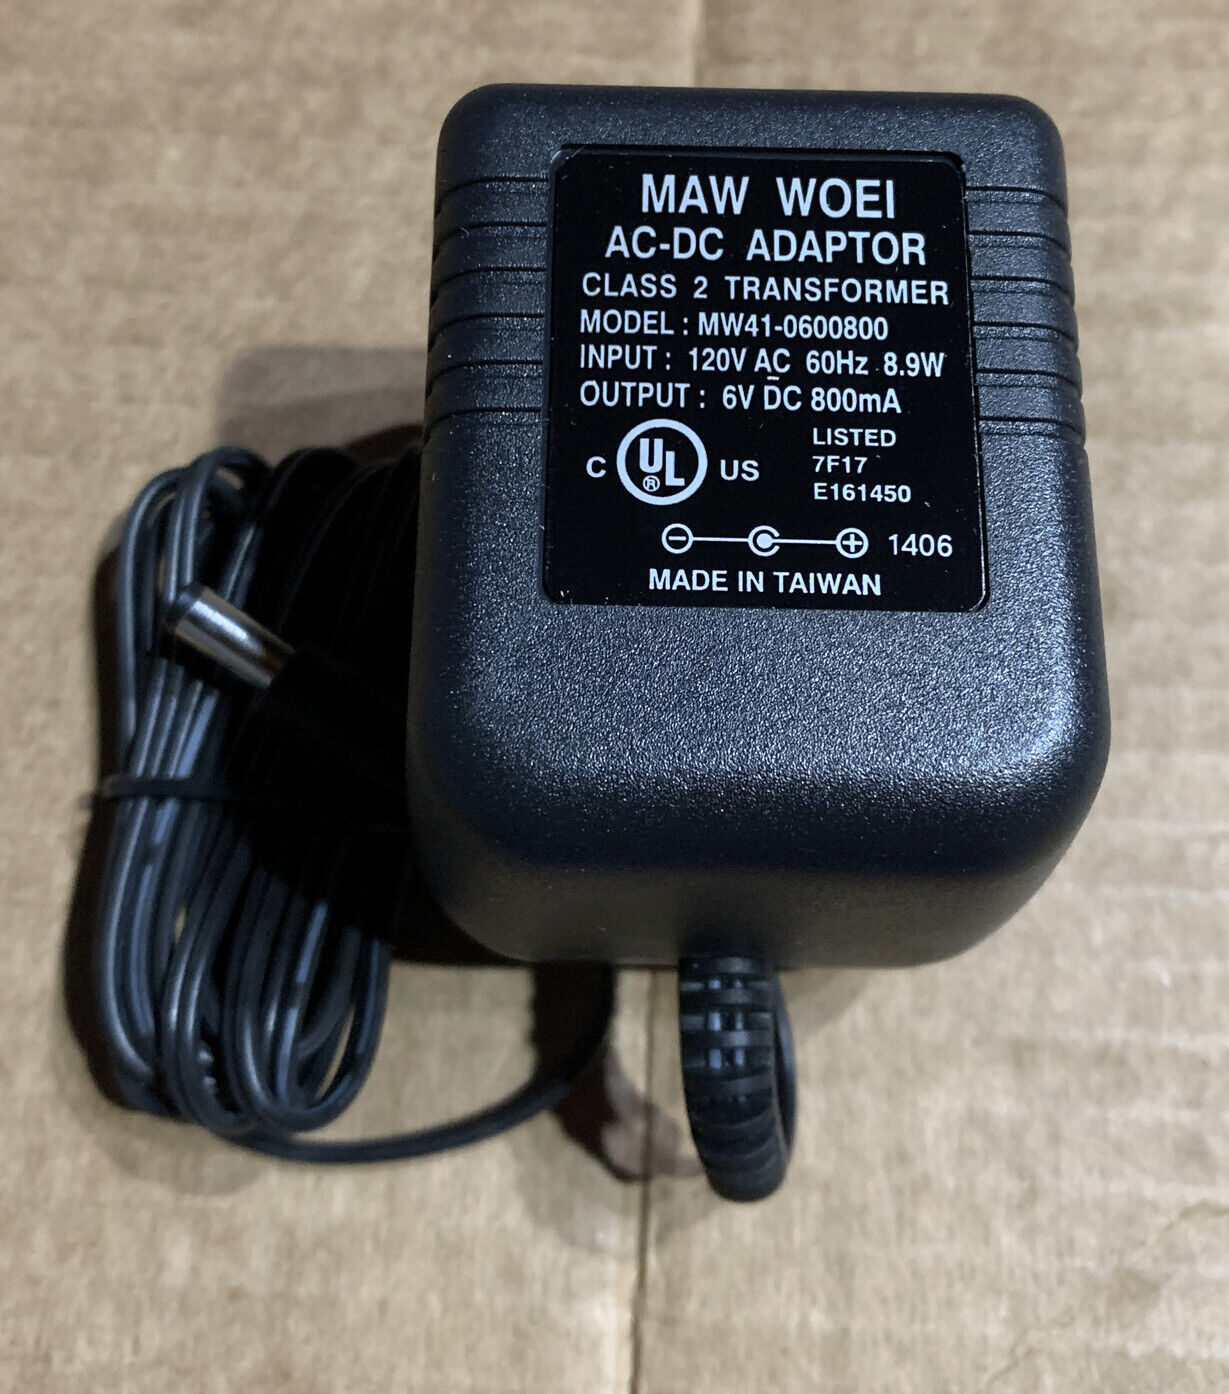 *Brand NEW*MAW WOEI 6VDC 800mA 8.9W AC-DC Adaptor Class 2 Transformer Model MW41-0600800